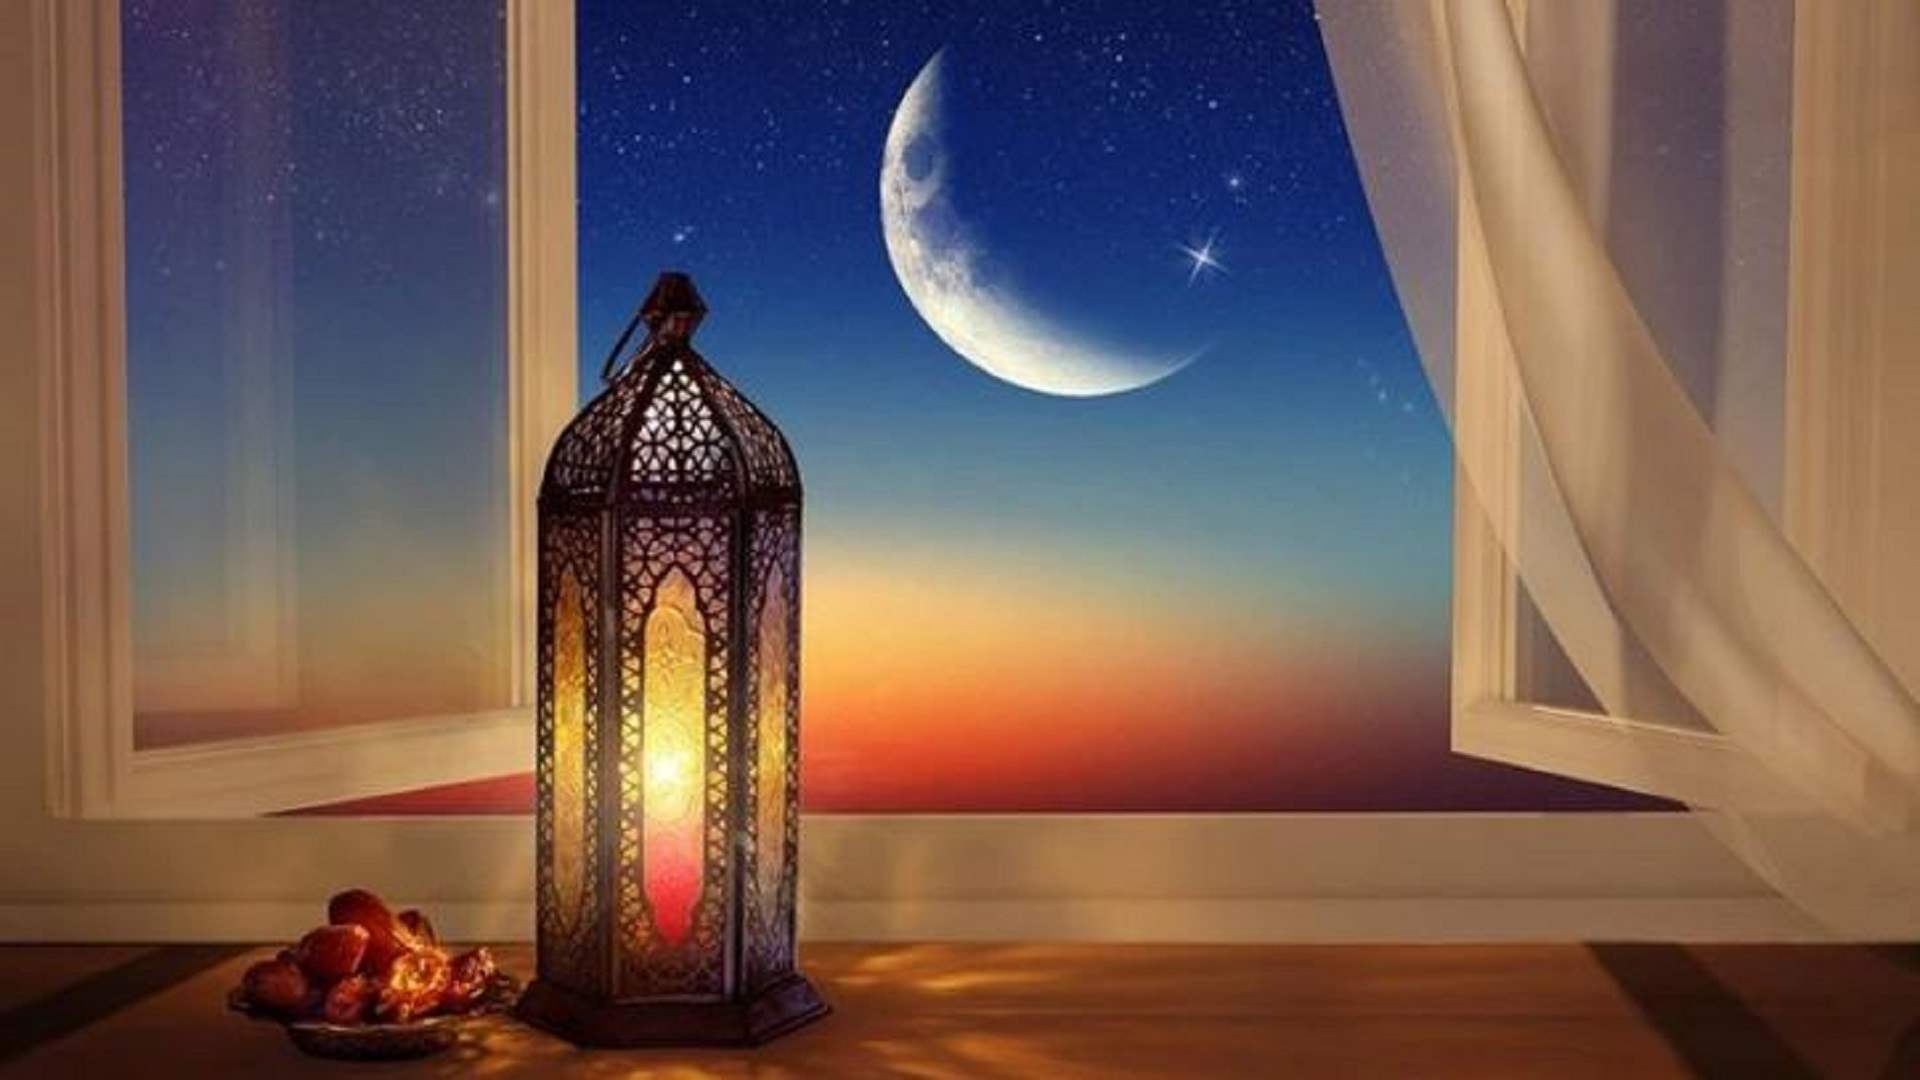 الخطيب: يوم غد الثلاثاء أول أيام شهر رمضان